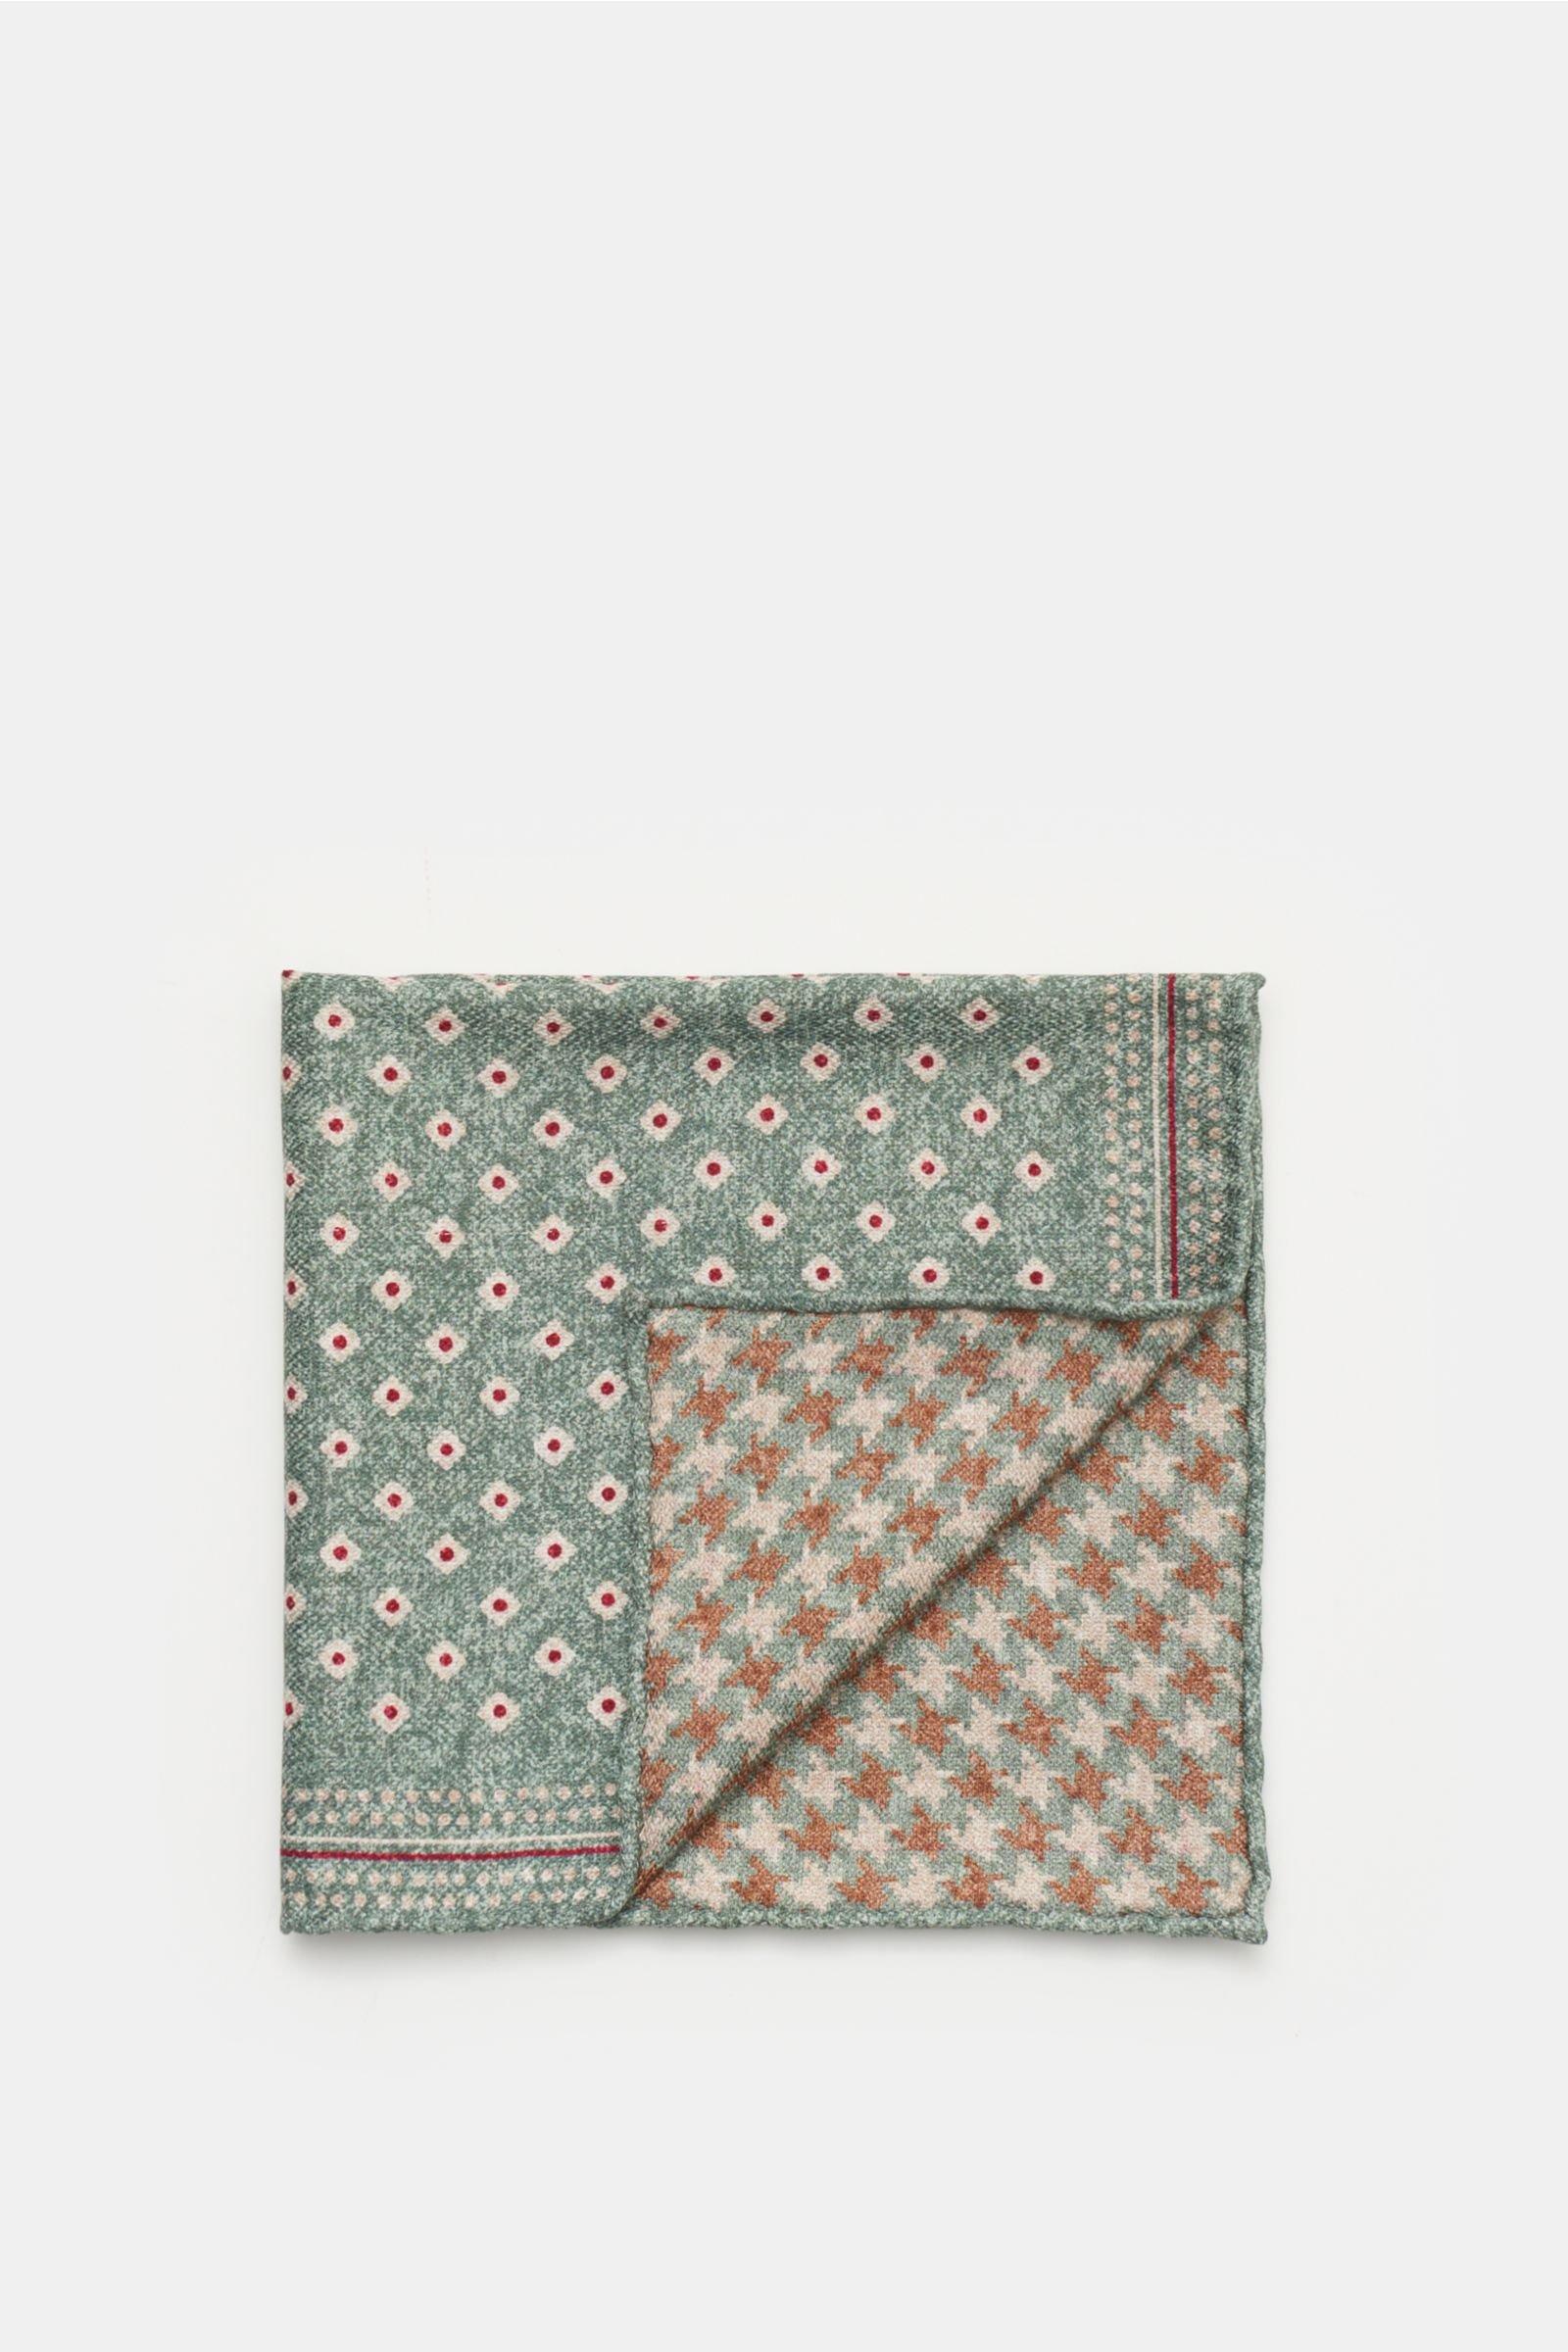 Pocket square grey-green/beige patterned